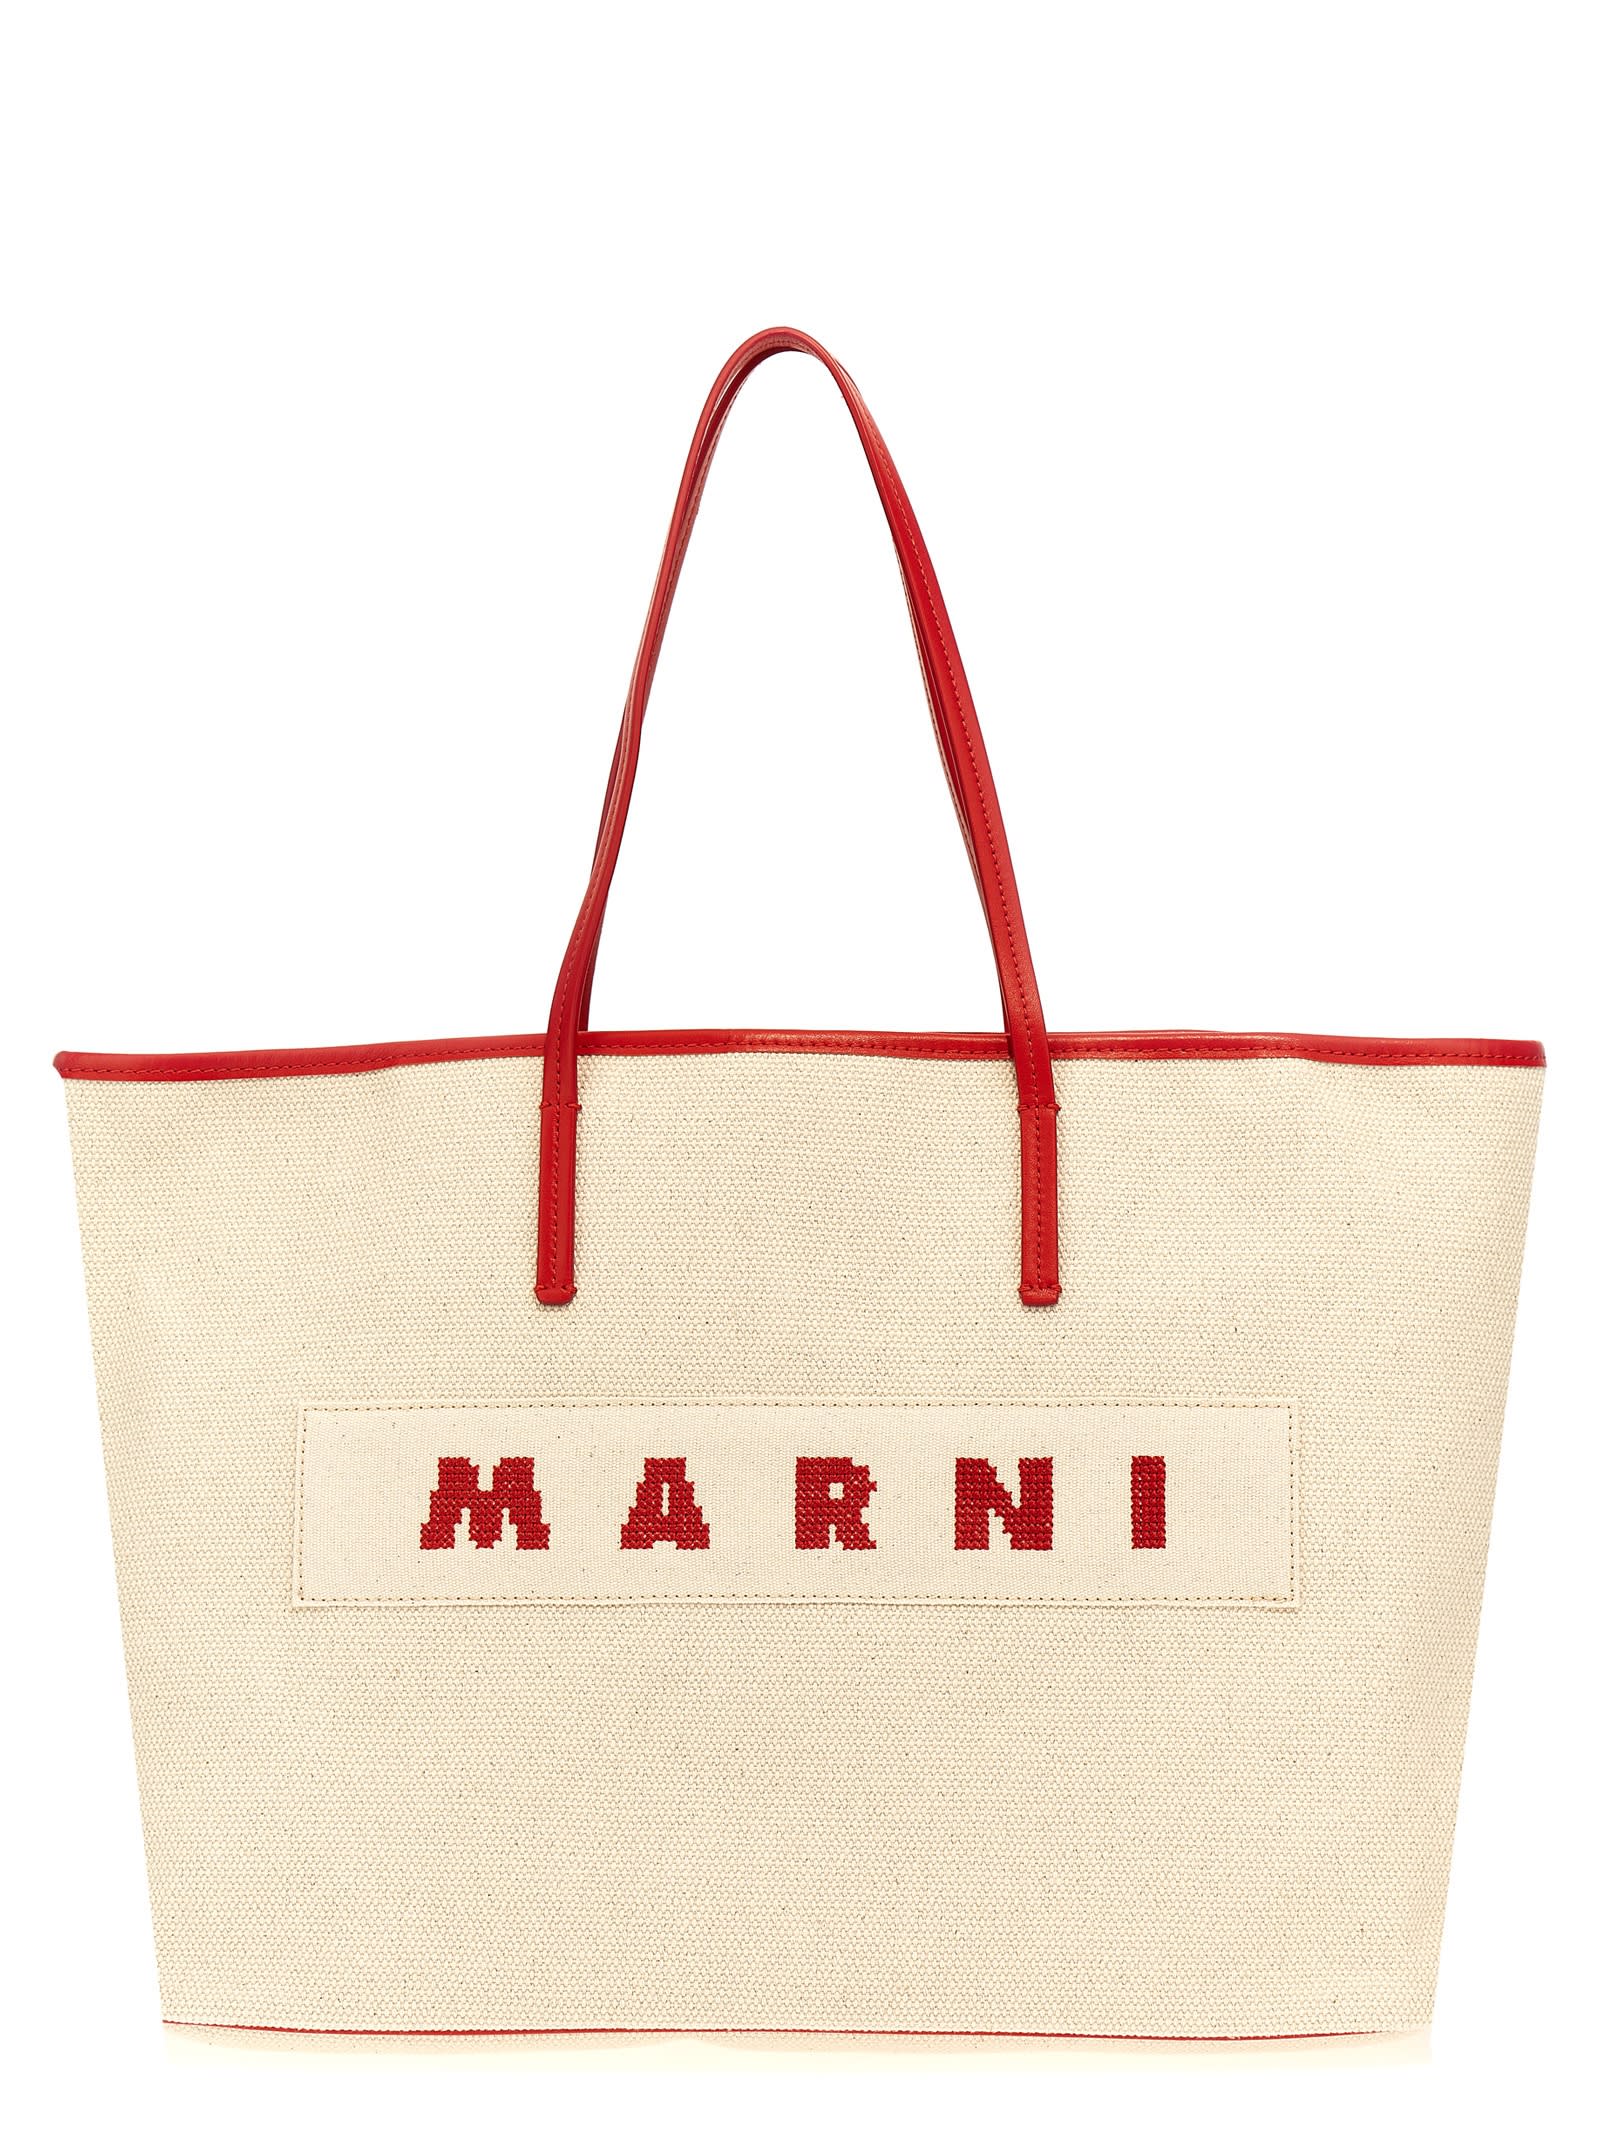 Shop Marni Logo Canvas Shopping Bag In Multicolor